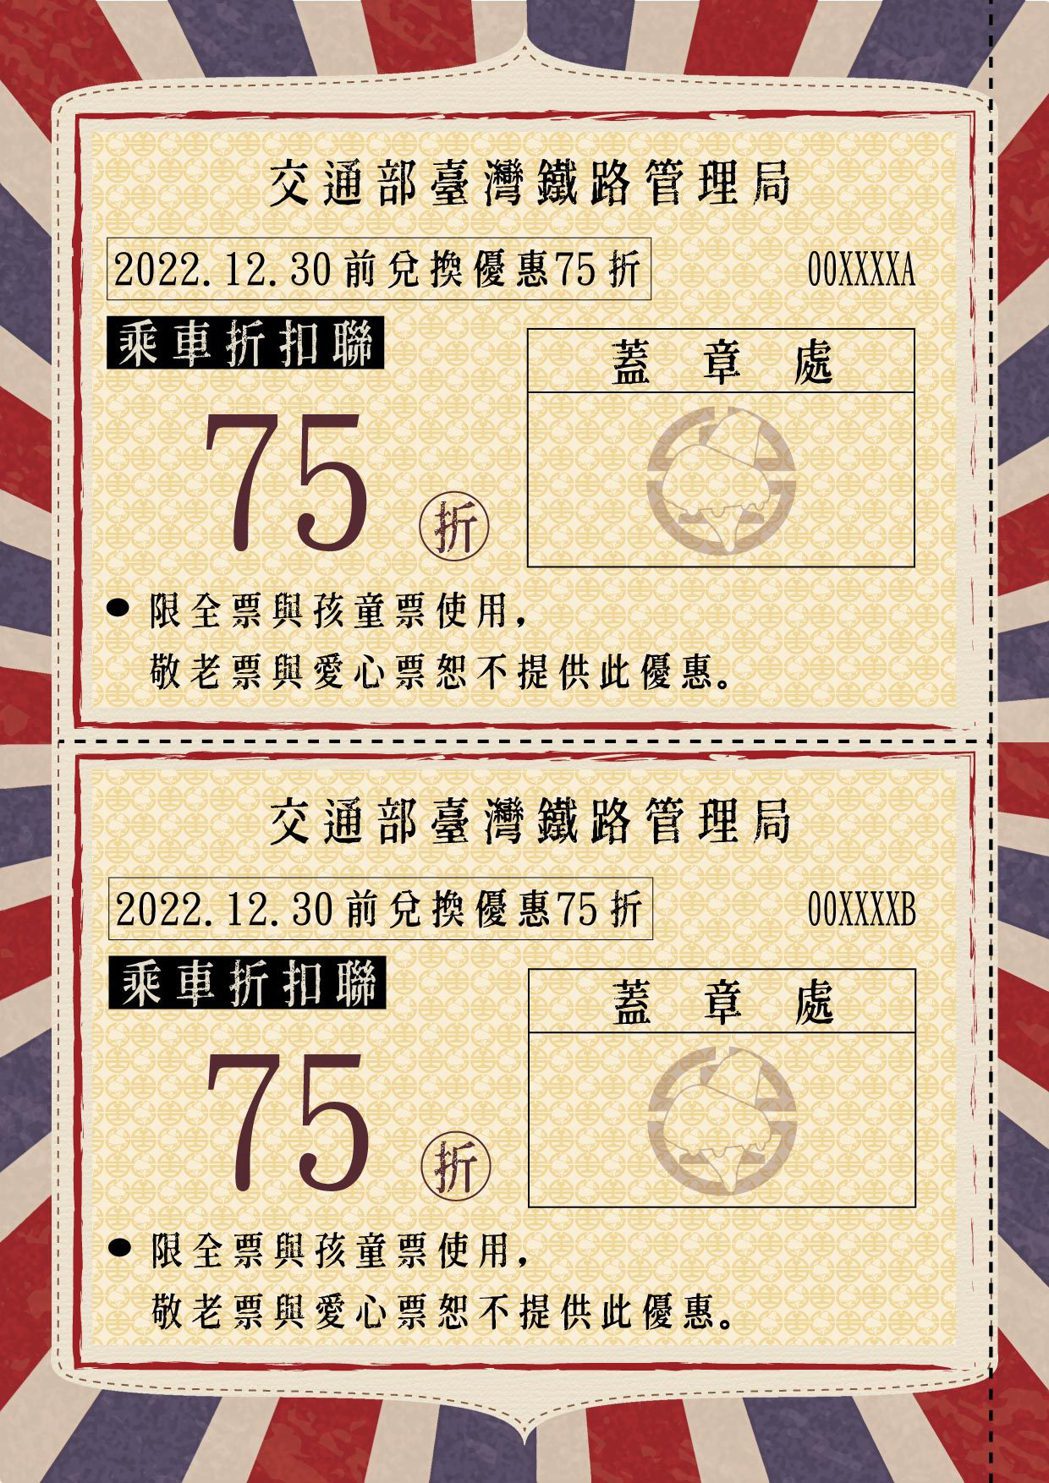 「台灣觀巴台鐵護照」每本護照內含台鐵列車乘車七五折折扣聯及「台灣觀巴」套裝旅遊行...